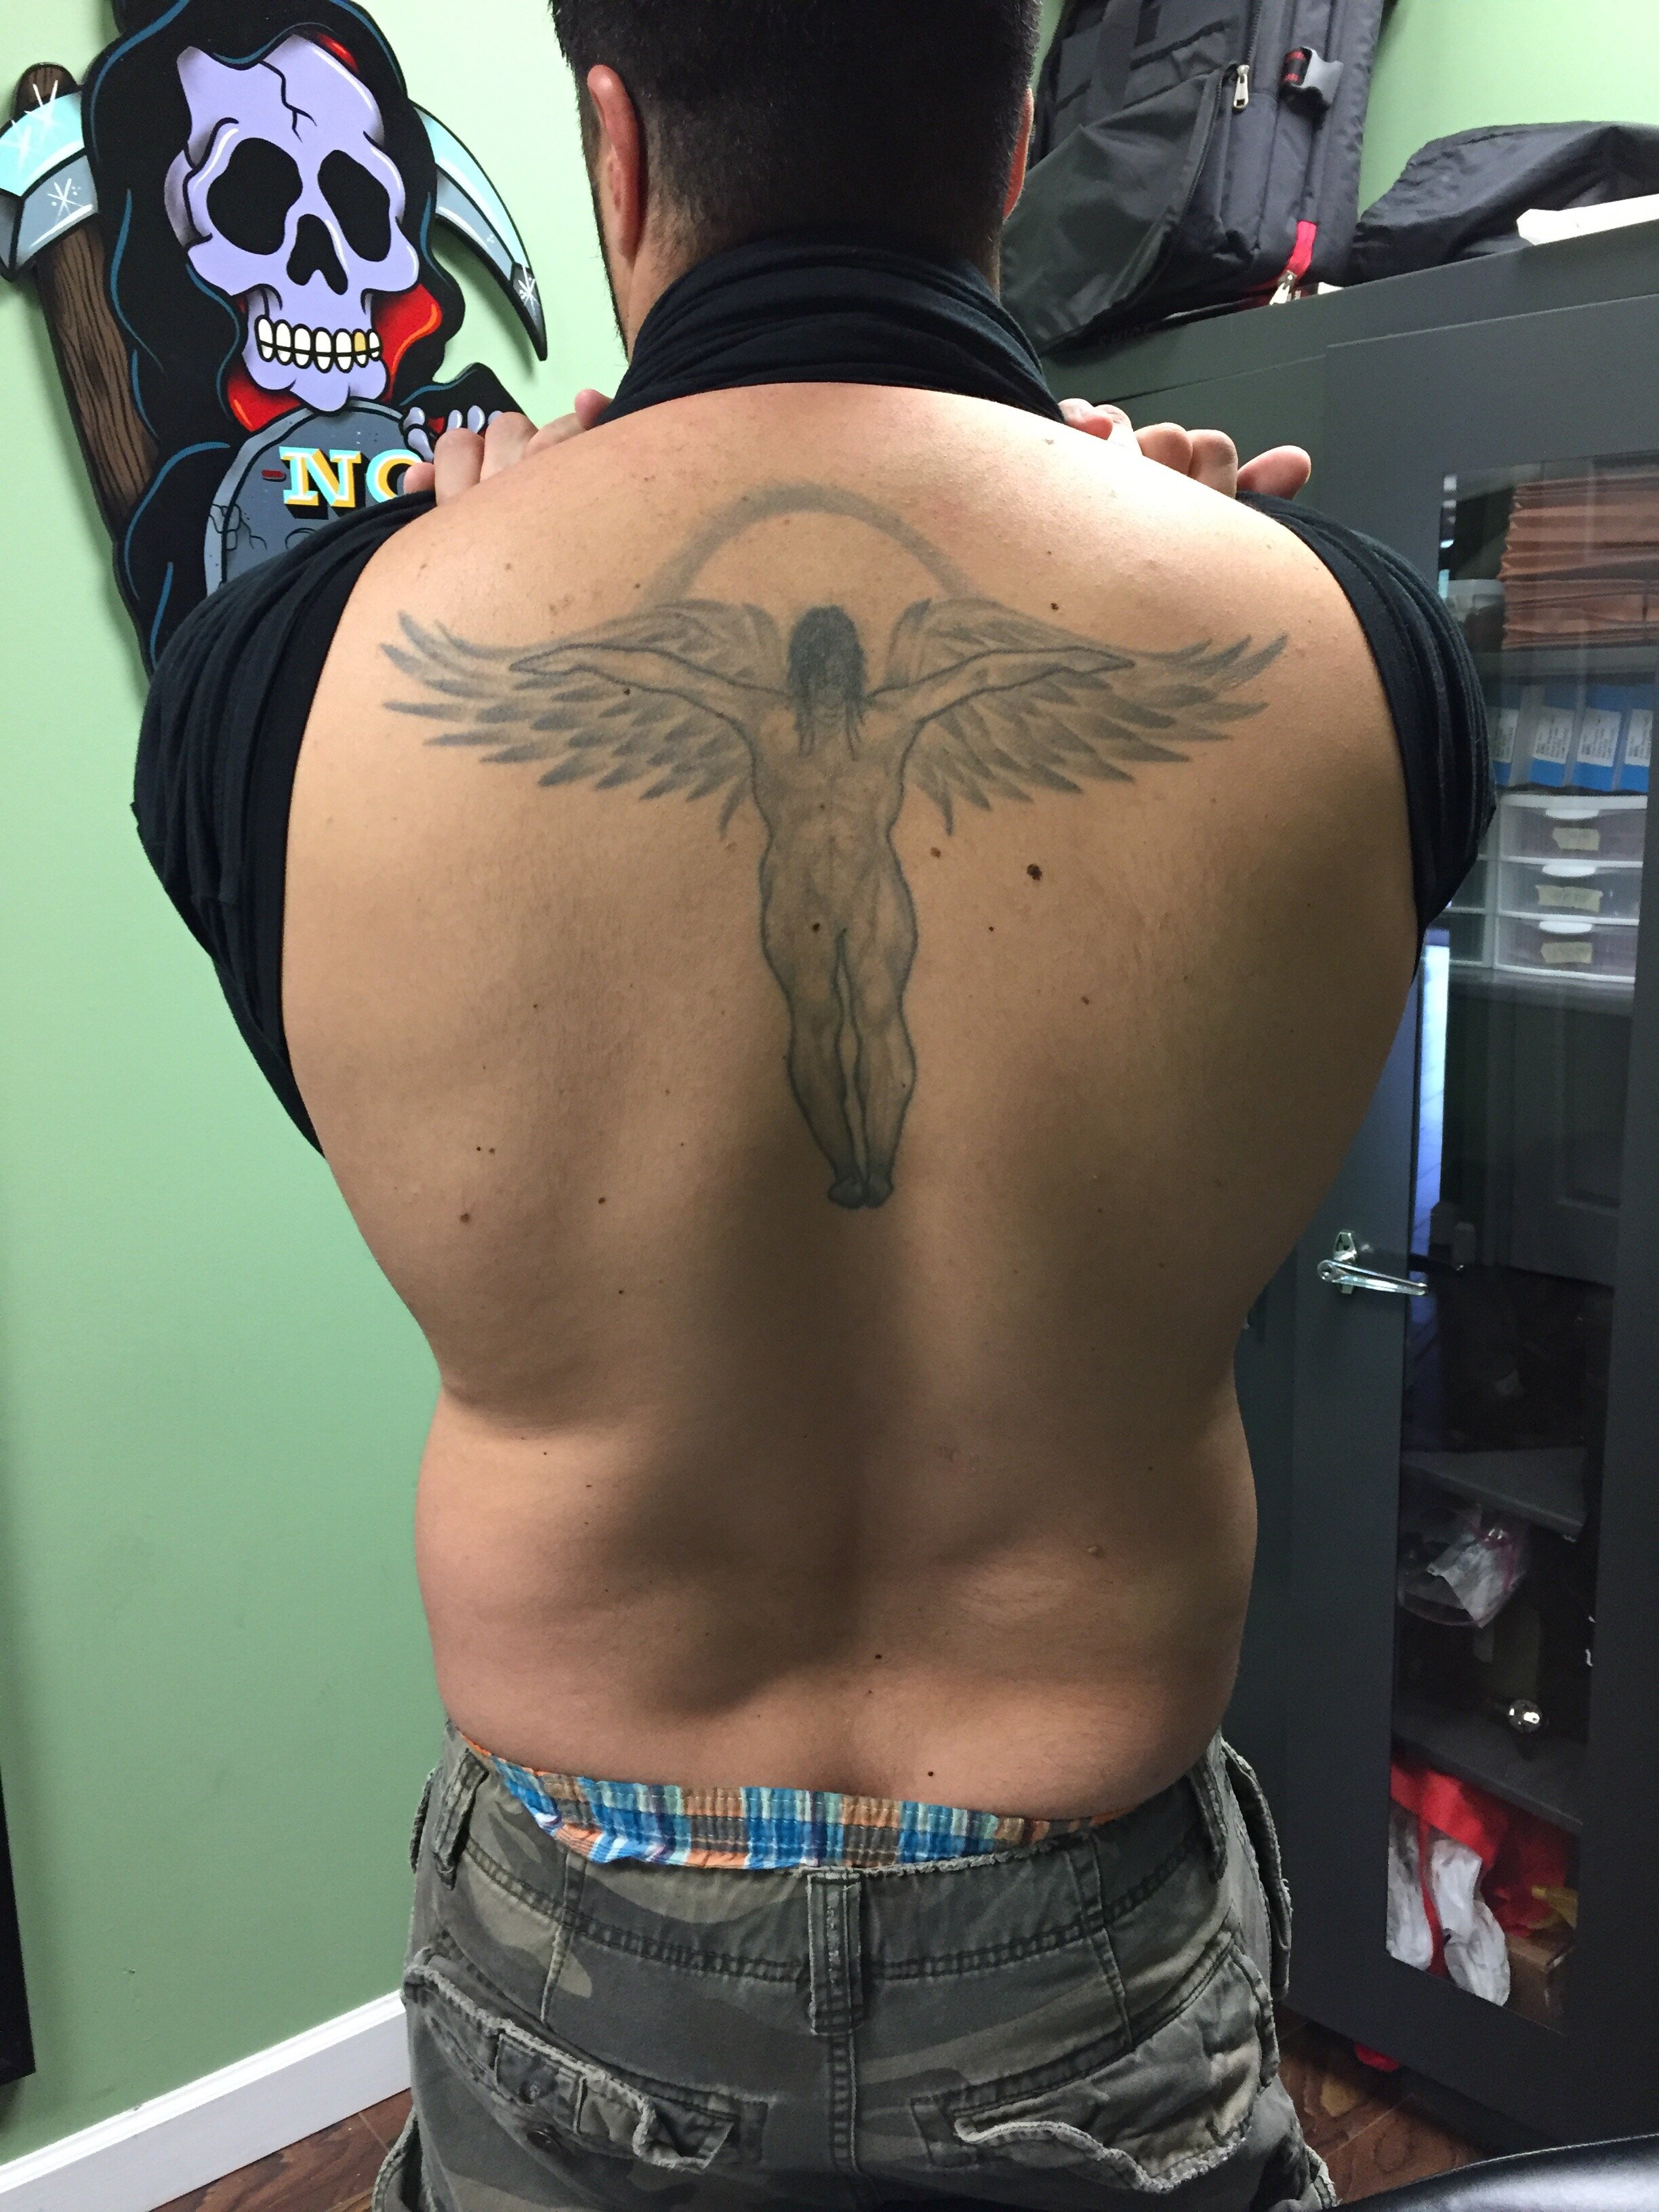 RyanThompsonTattoos_blackandgray_back_tattoo_cross_religious_angel_wings_doves-005.jpg